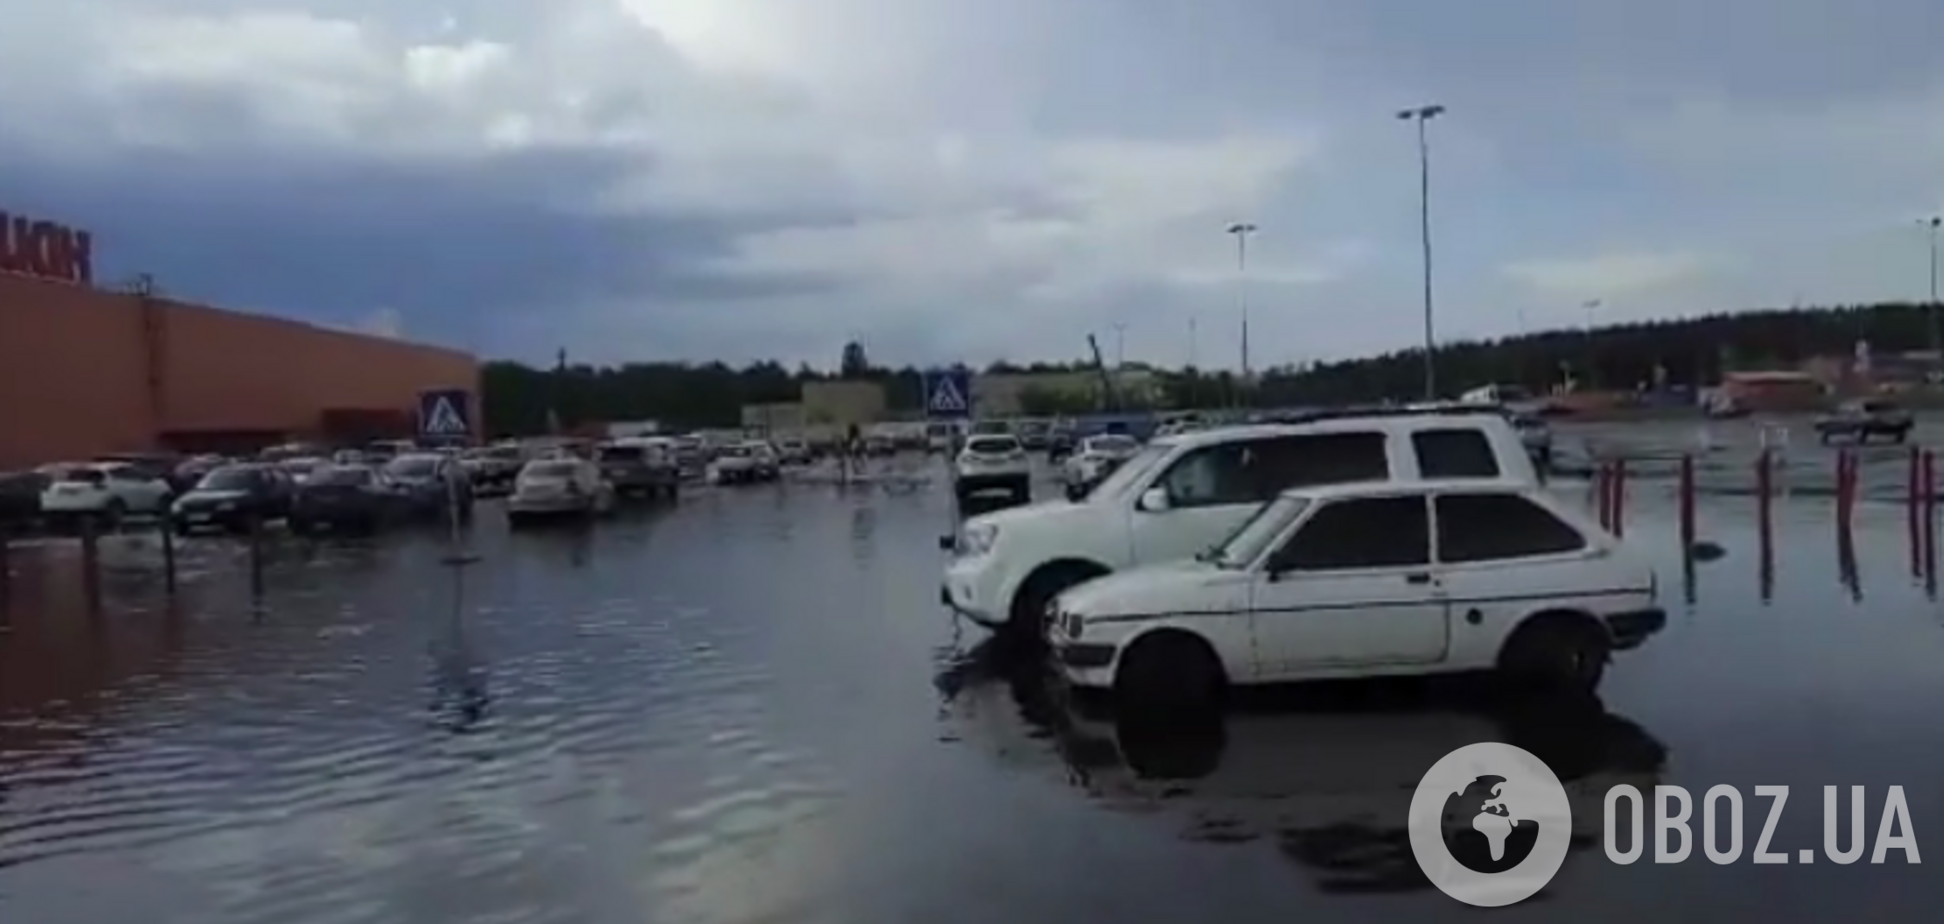 Потоп возле ТРЦ Lavina Mall